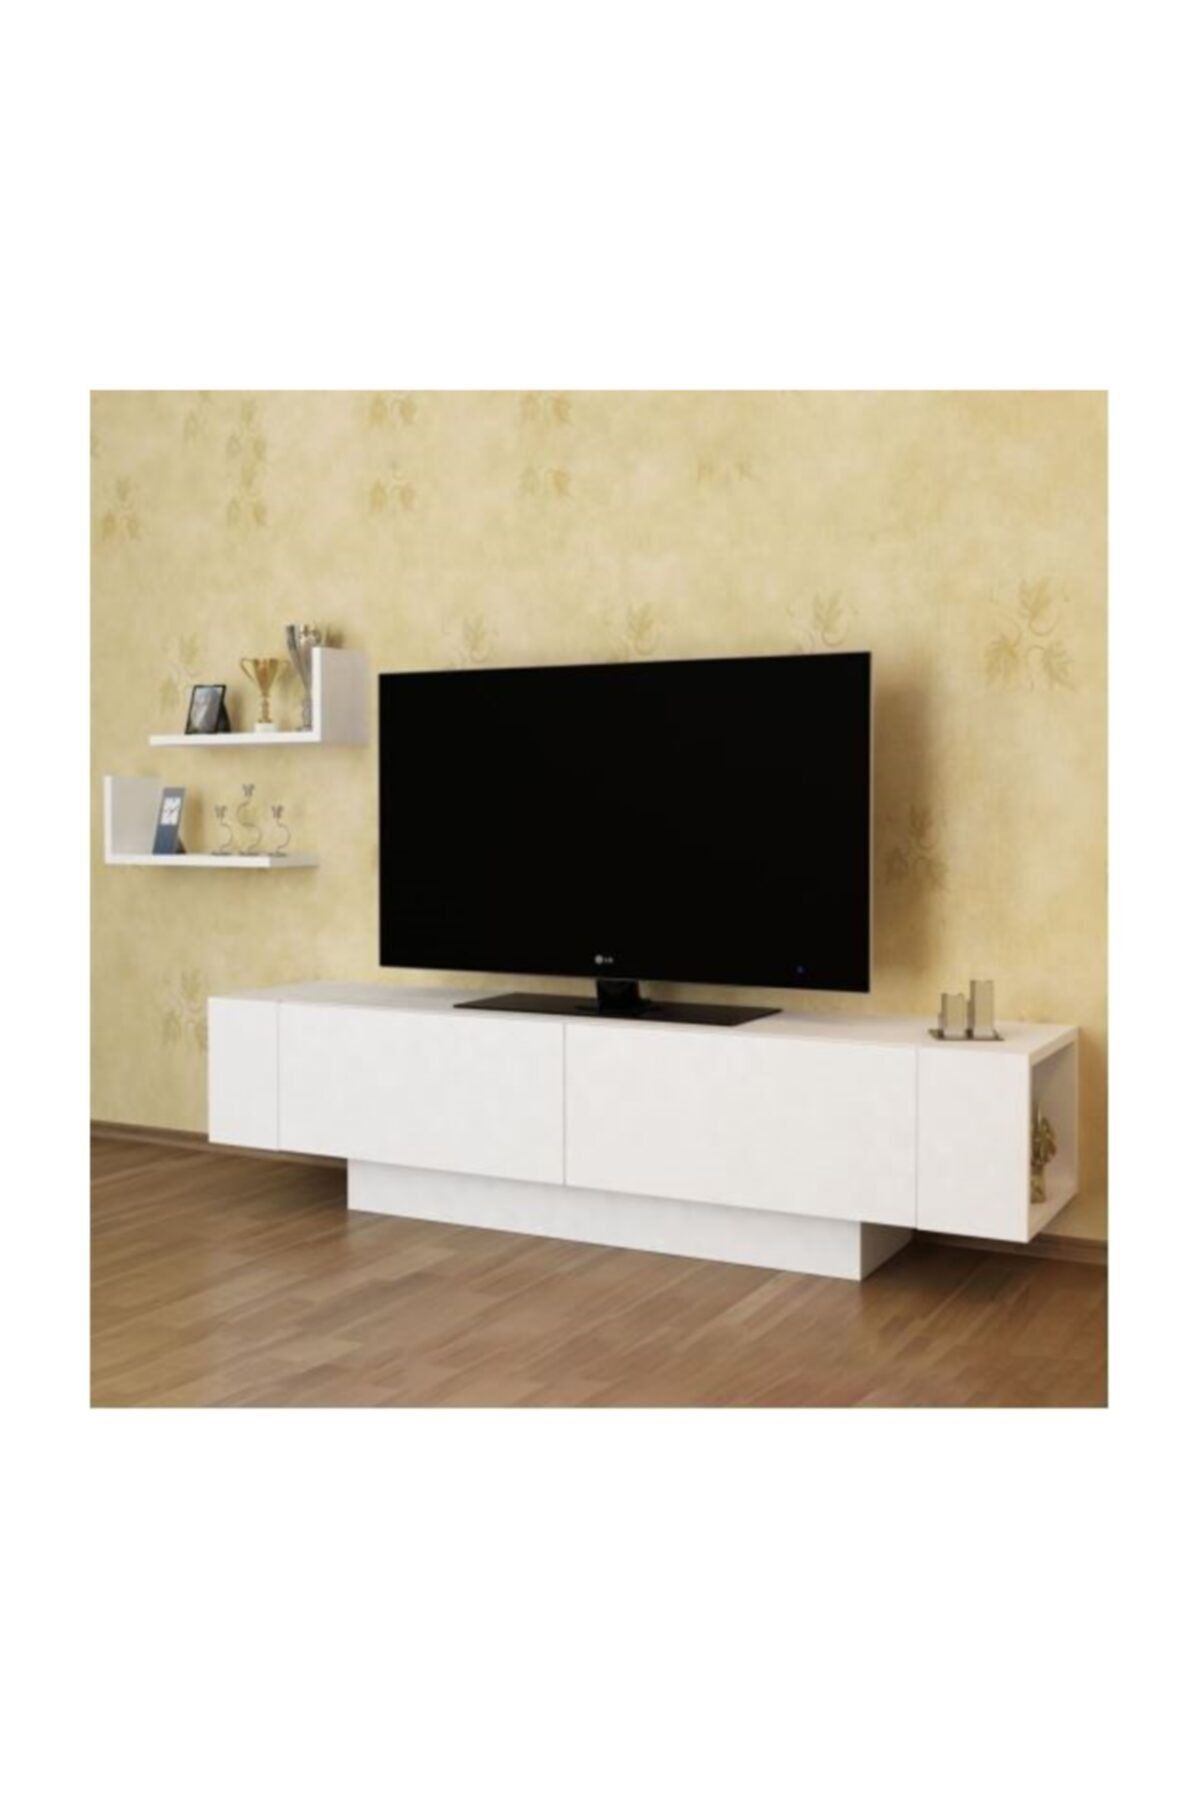 BMdekor Tv Sehpası Ekol Beyaz 150 Cm